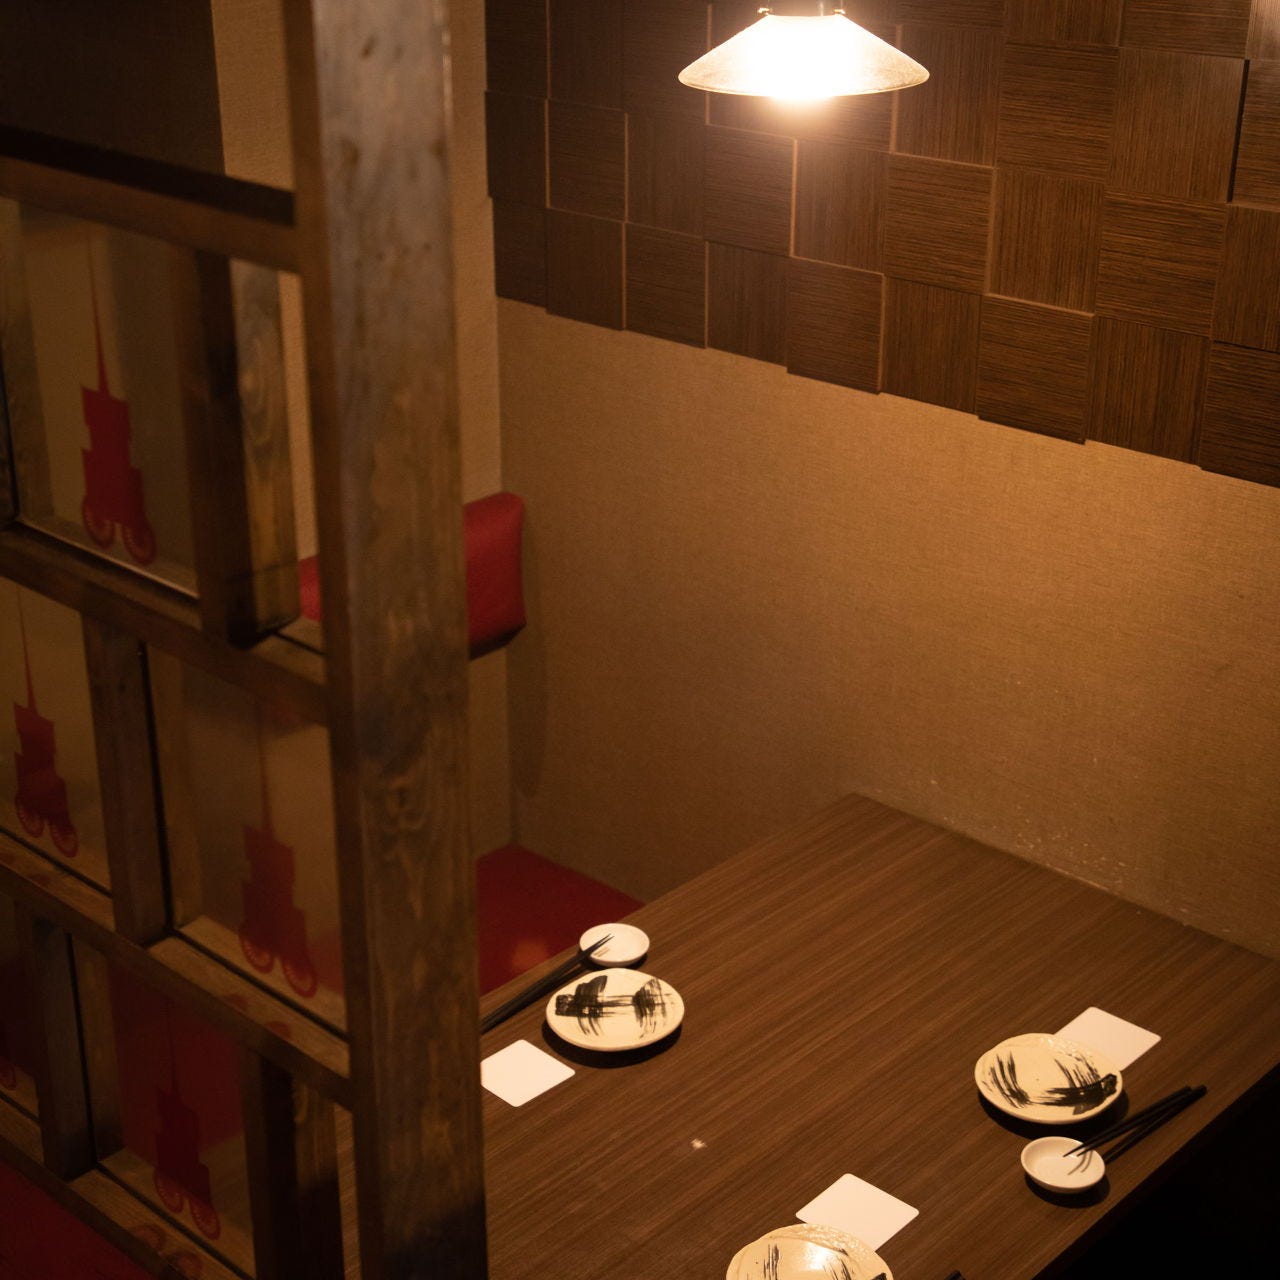 22年 最新グルメ 京都駅にある個室でゆったり京料理を味わえるお店 レストラン カフェ 居酒屋のネット予約 京都版